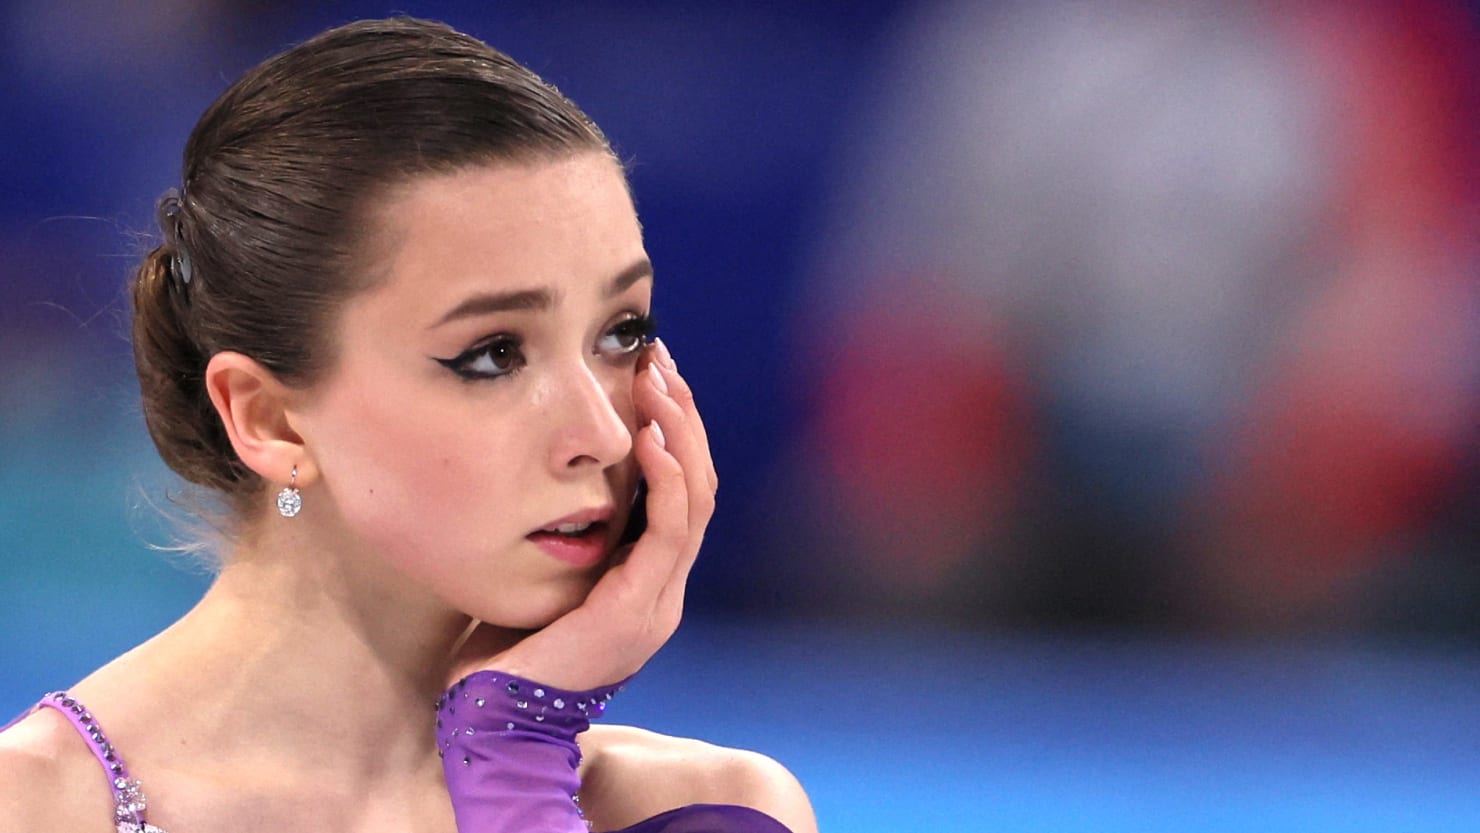 El “cóctel” de drogas Fishy Heart de un patinador adolescente ruso enciende la furia por la equidad olímpica contra el dopaje